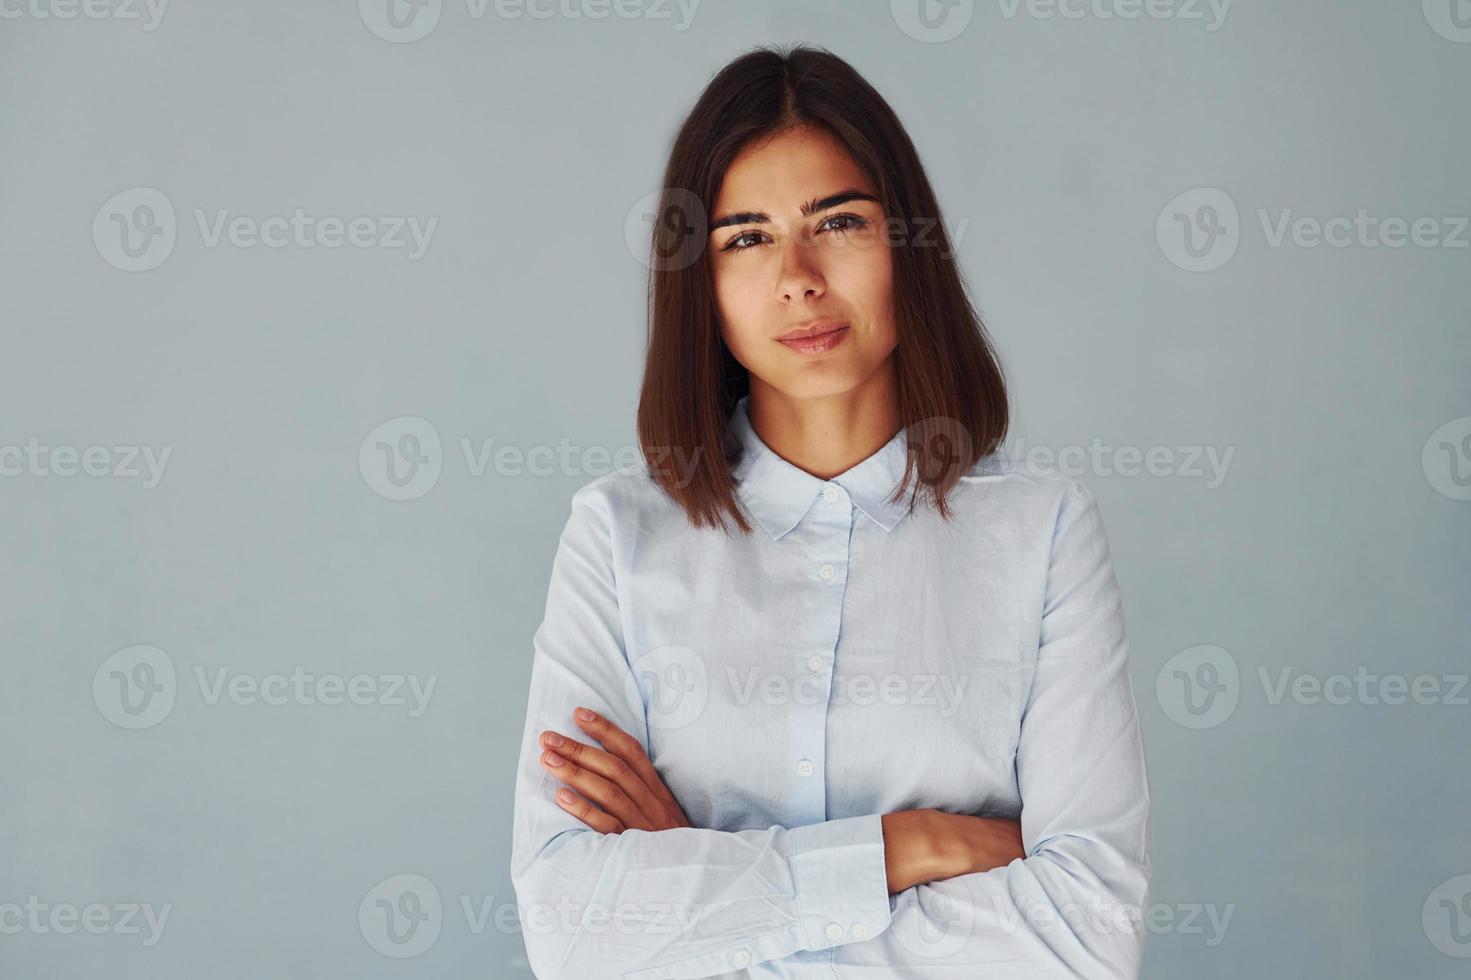 jeune femme moderne en chemise blanche debout à l'intérieur du studio photo